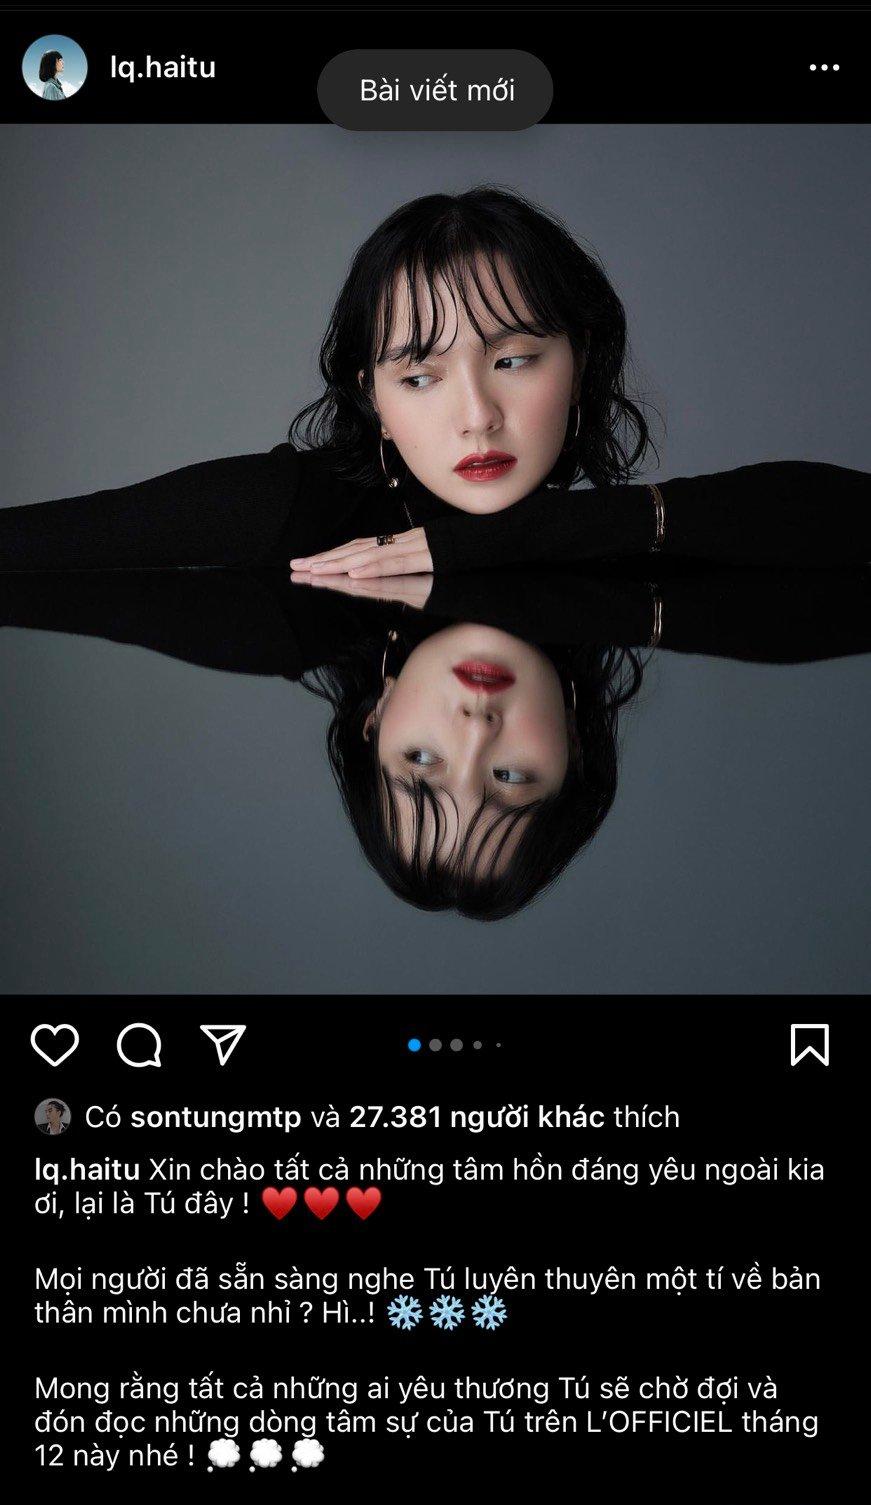 Bài viết khoe bộ ảnh mới của nữ tân binh trên tài khoản Instagram đã được Chủ tịch thả tim nhiệt tình